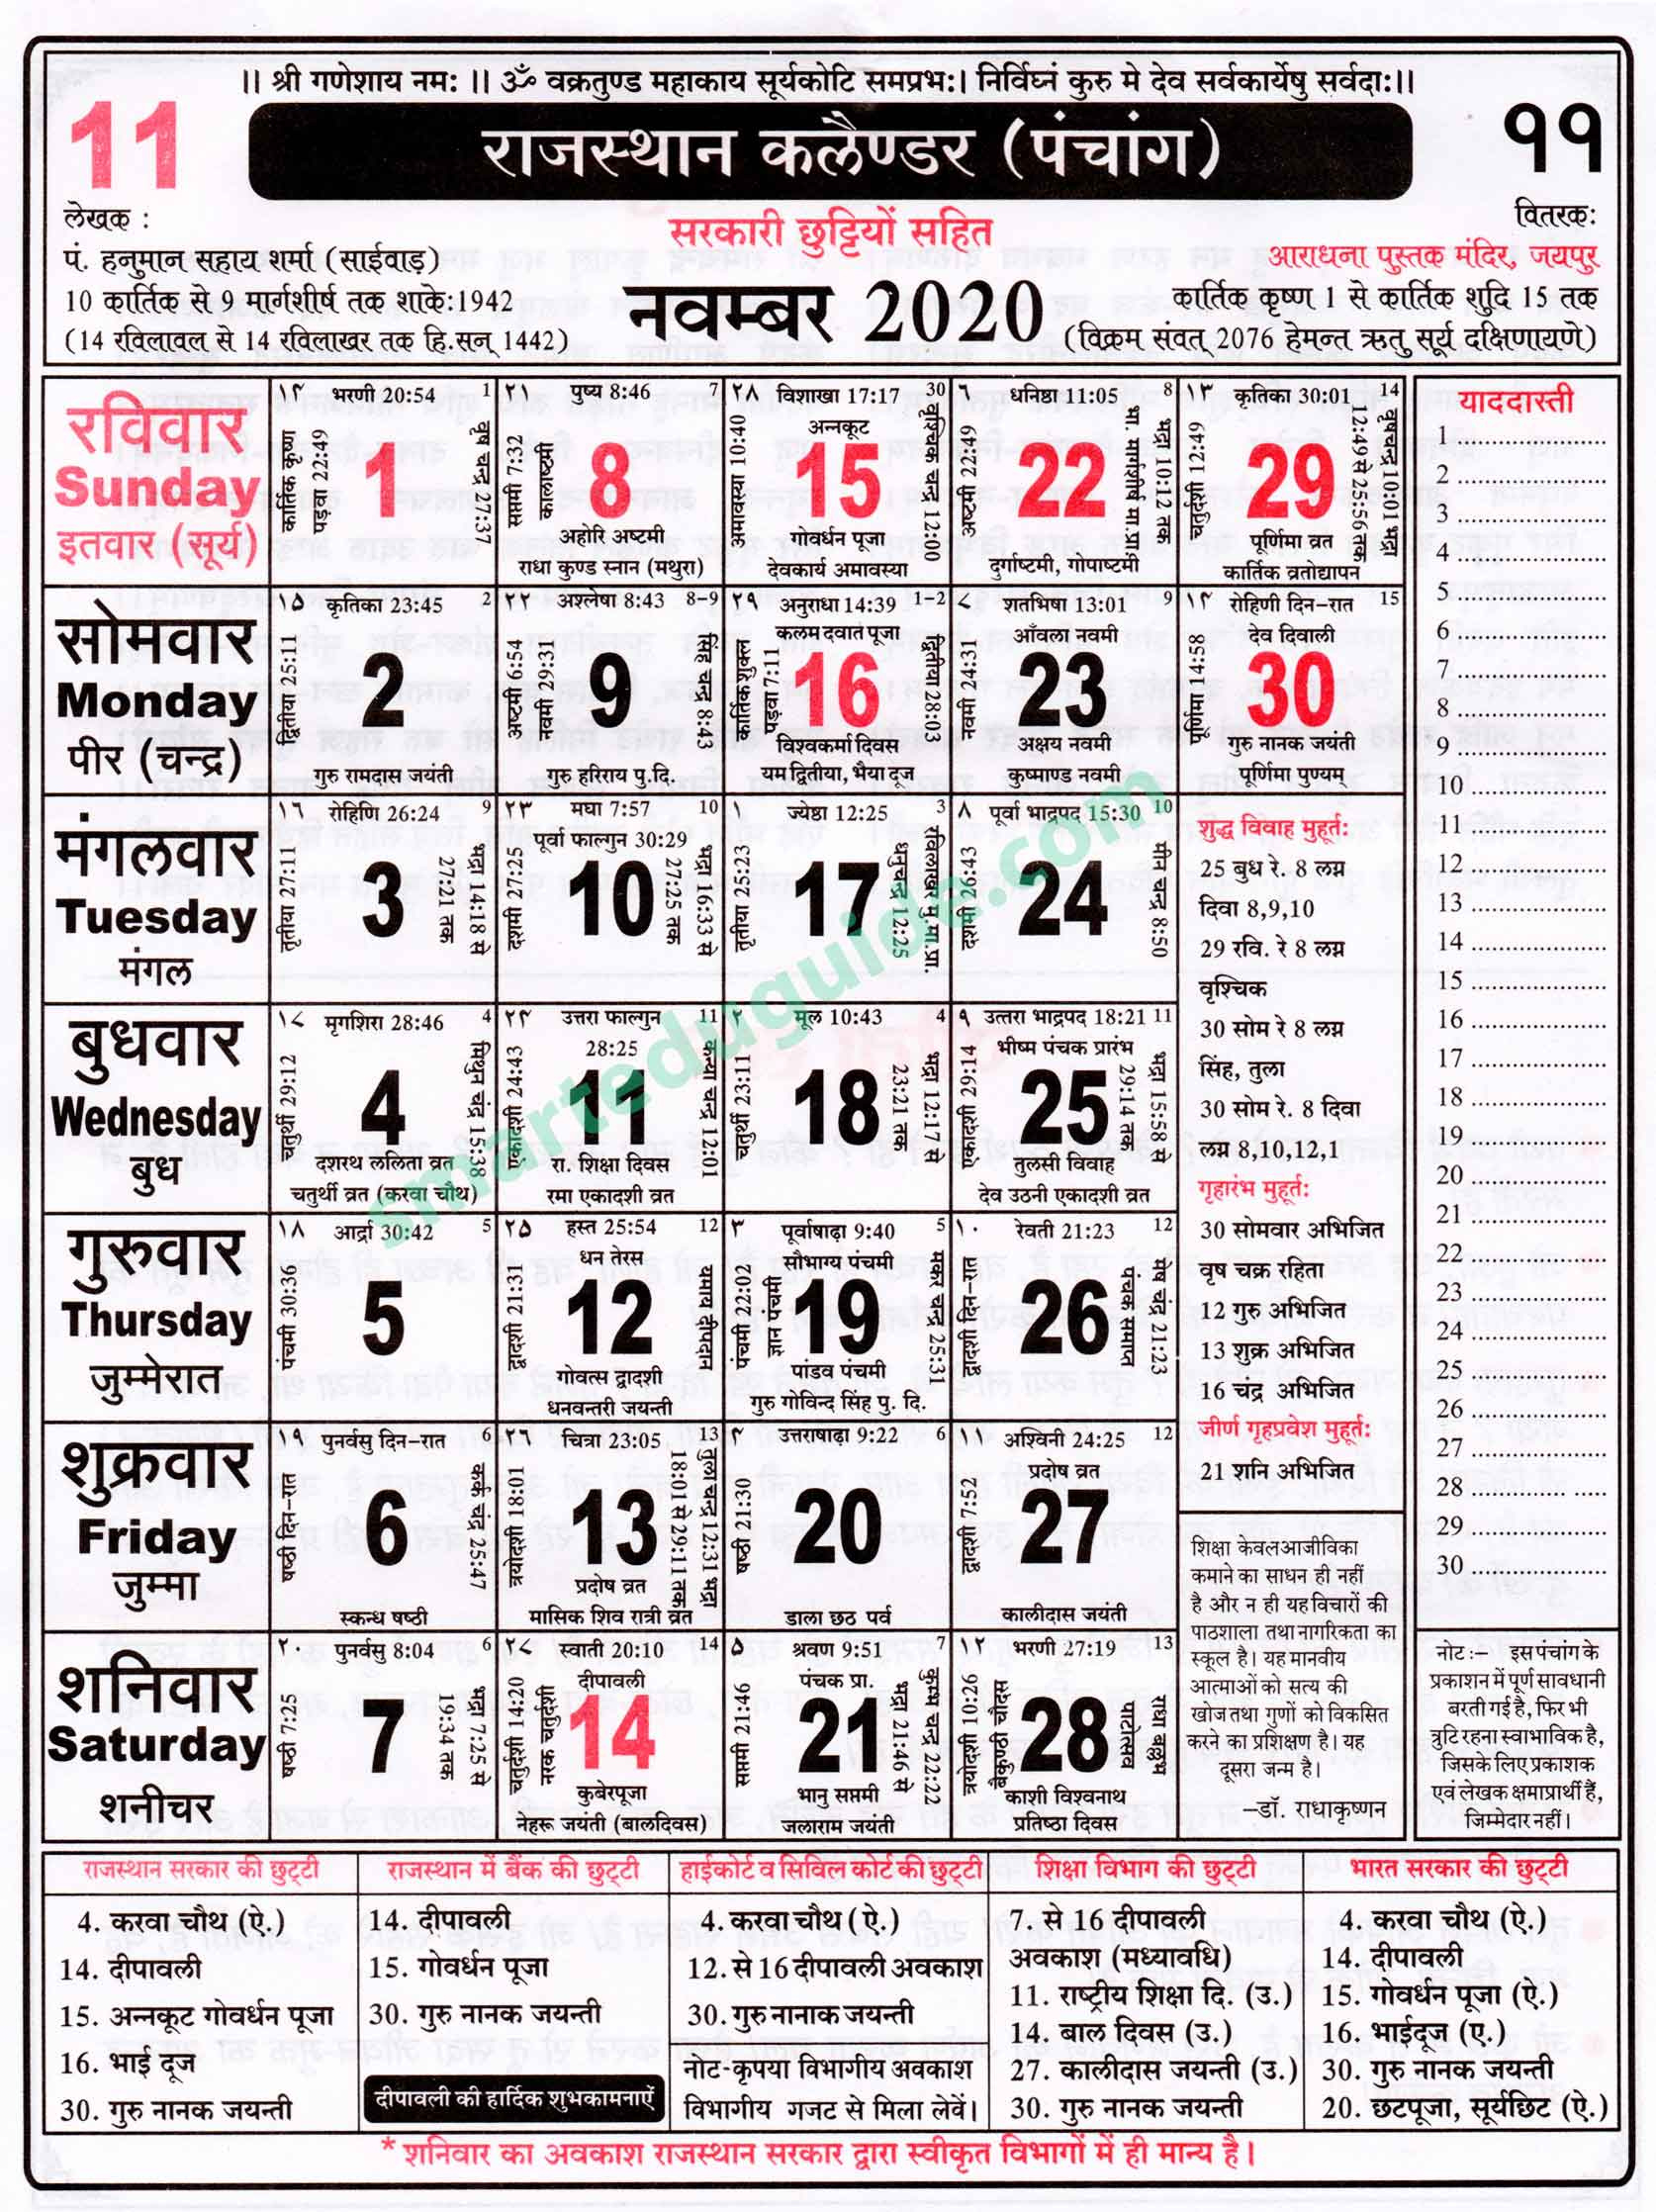 Rajasthan Calendar 2020 October | Seg Rajasthan Calendar December 2021